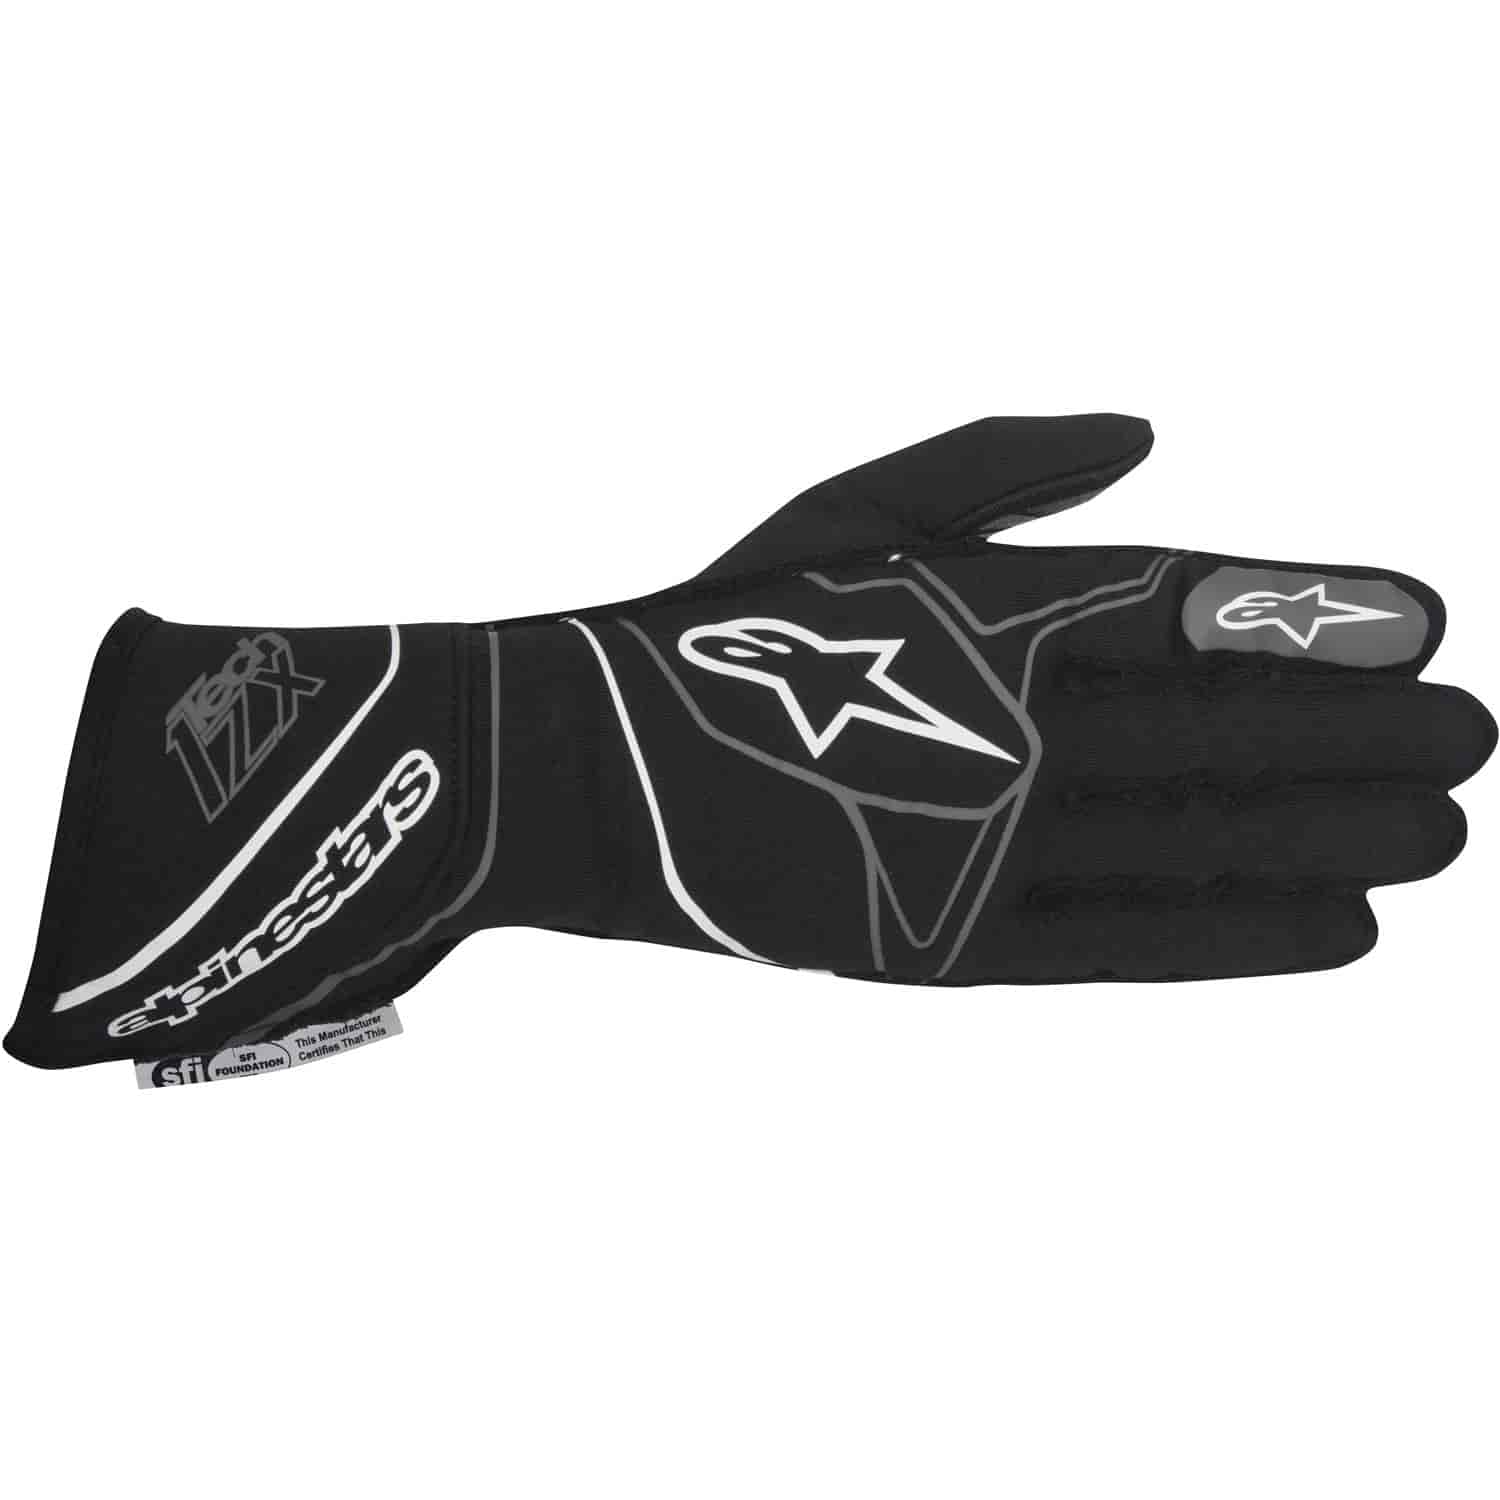 Tech 1-ZX Glove Black/White SFI 3.3/5